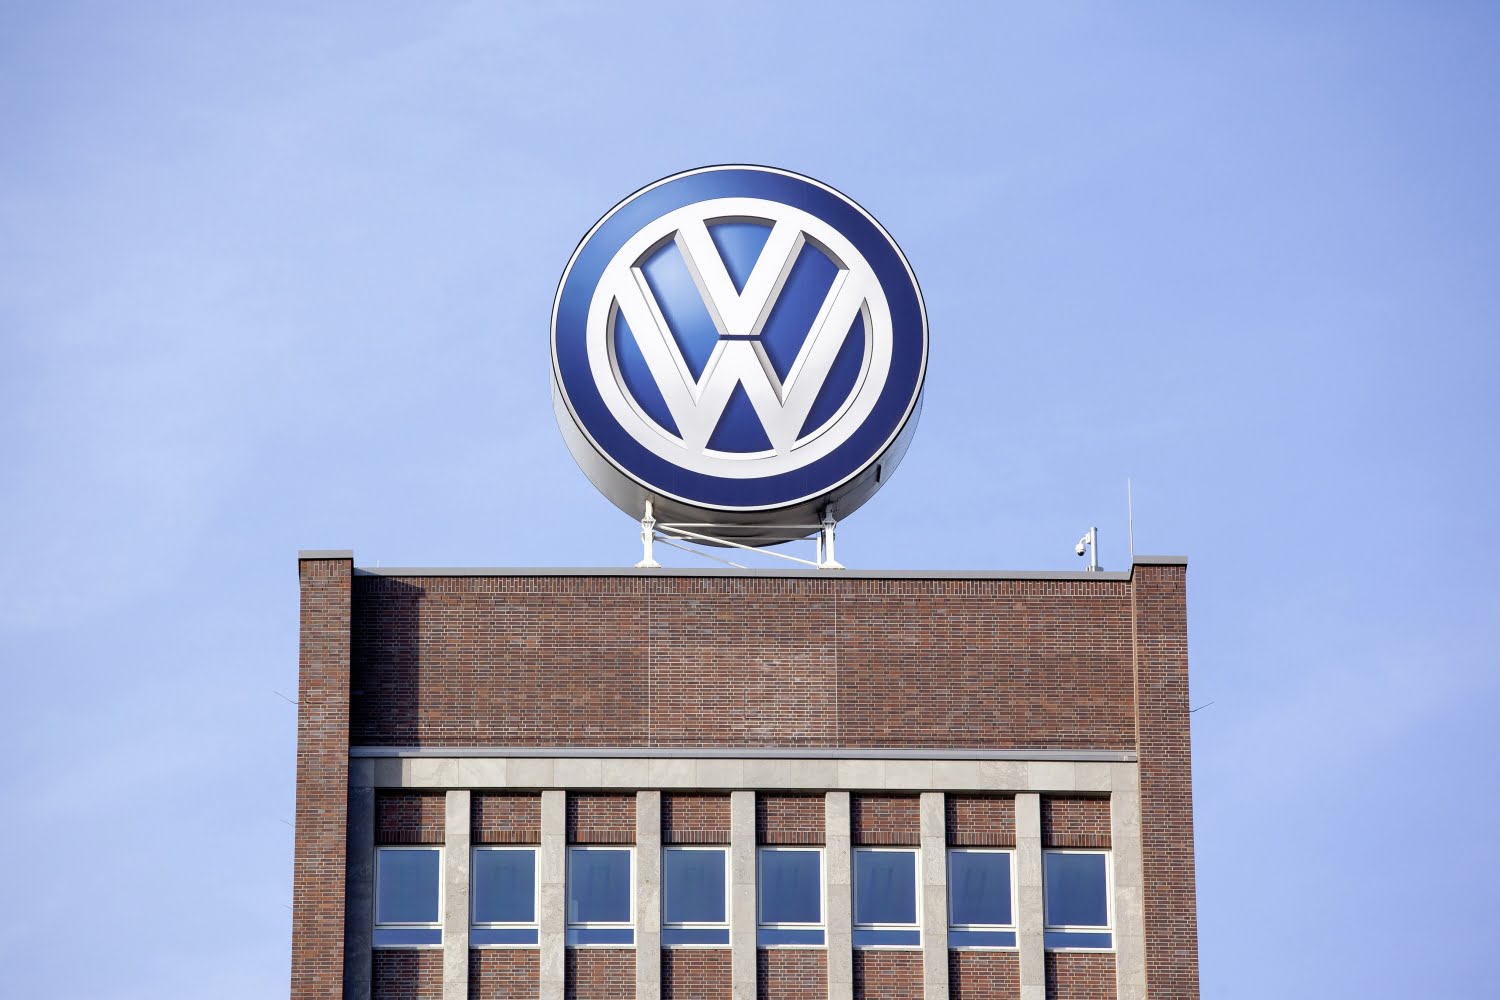 Volkswagen annonce une augmentation de 96% des livraisons de véhicules électriques en 2021